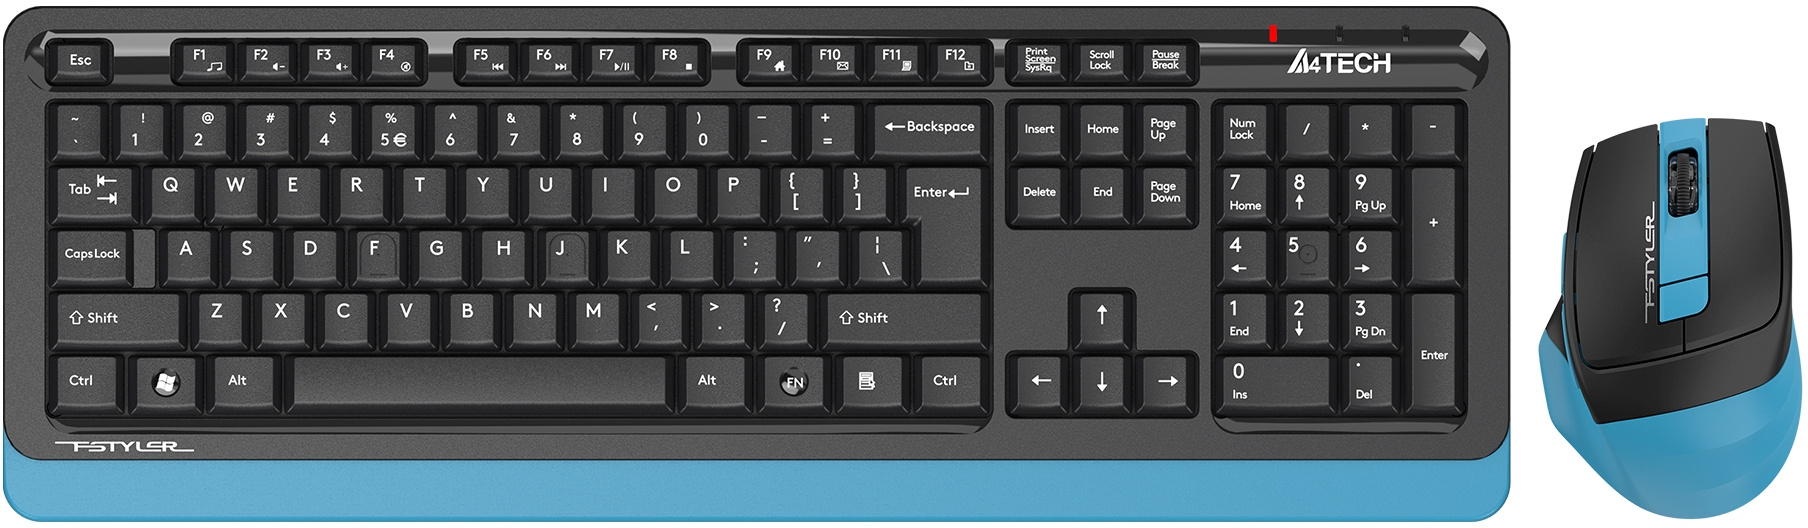 Комплект Клавиатура/мышь A4Tech  Беспроводной чёрный, FG1035 NAVY BLUE